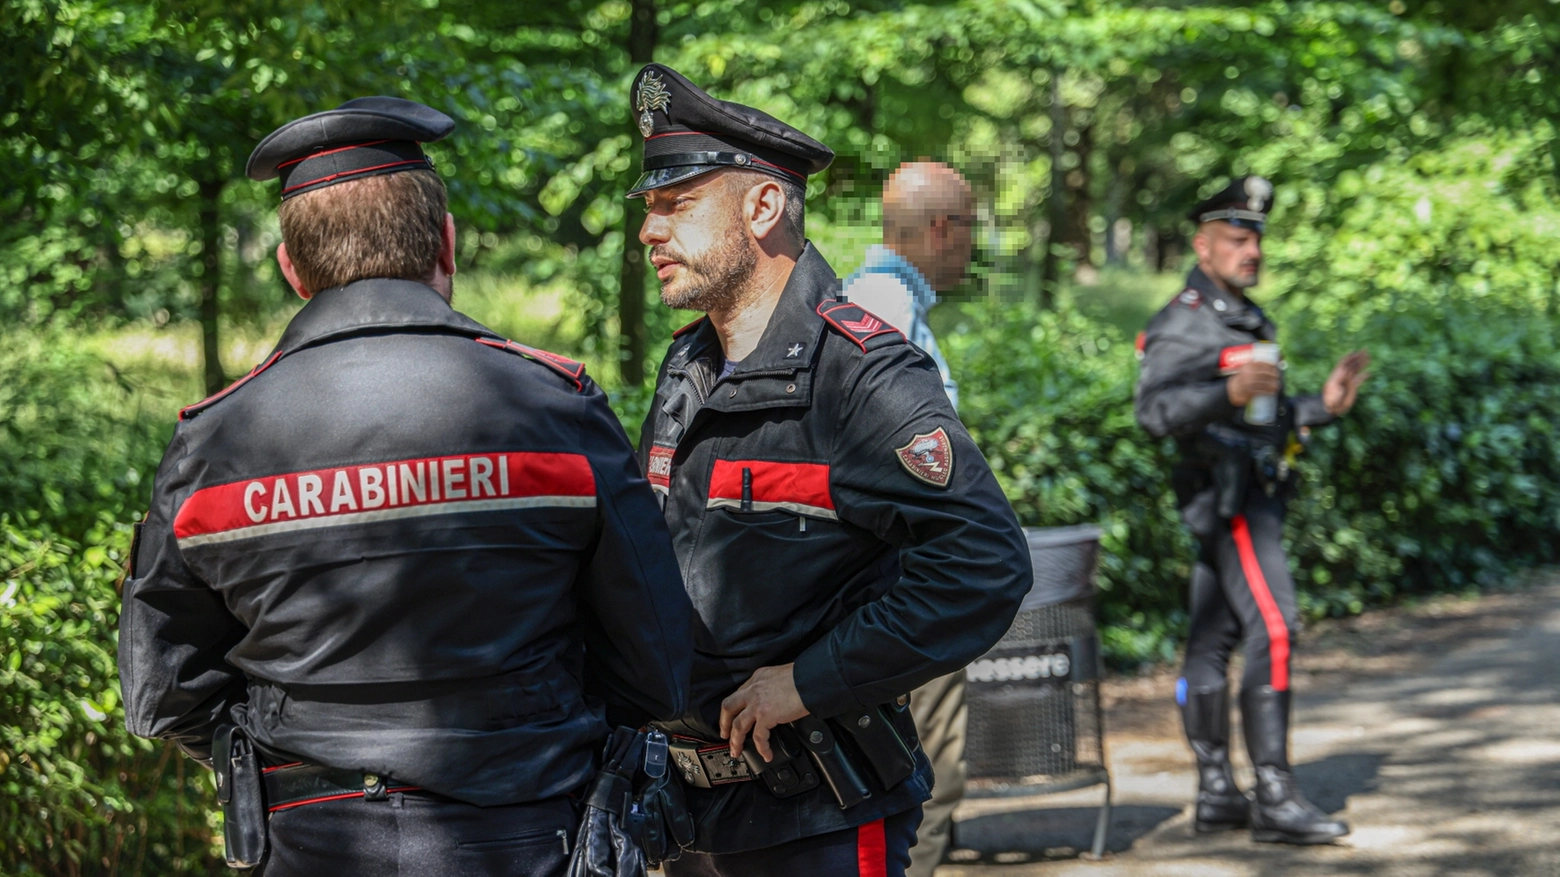 Controlli dei carabinieri in un parco pubblico (foto di repertorio)